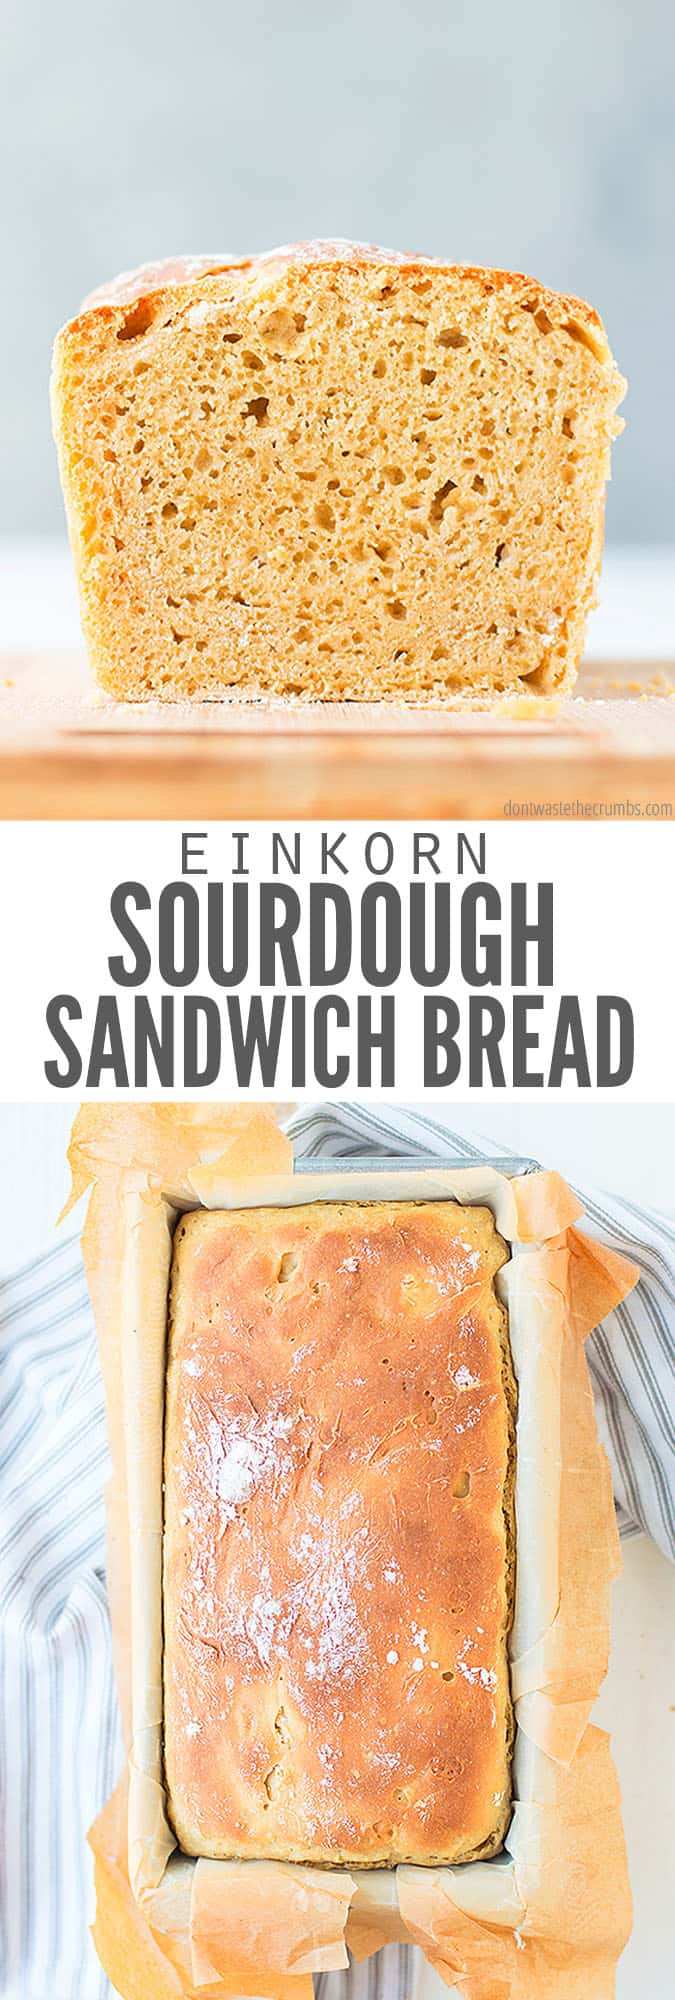 Easy No Knead Einkorn Sourdough Bread The Perfect Sandwich Loaf